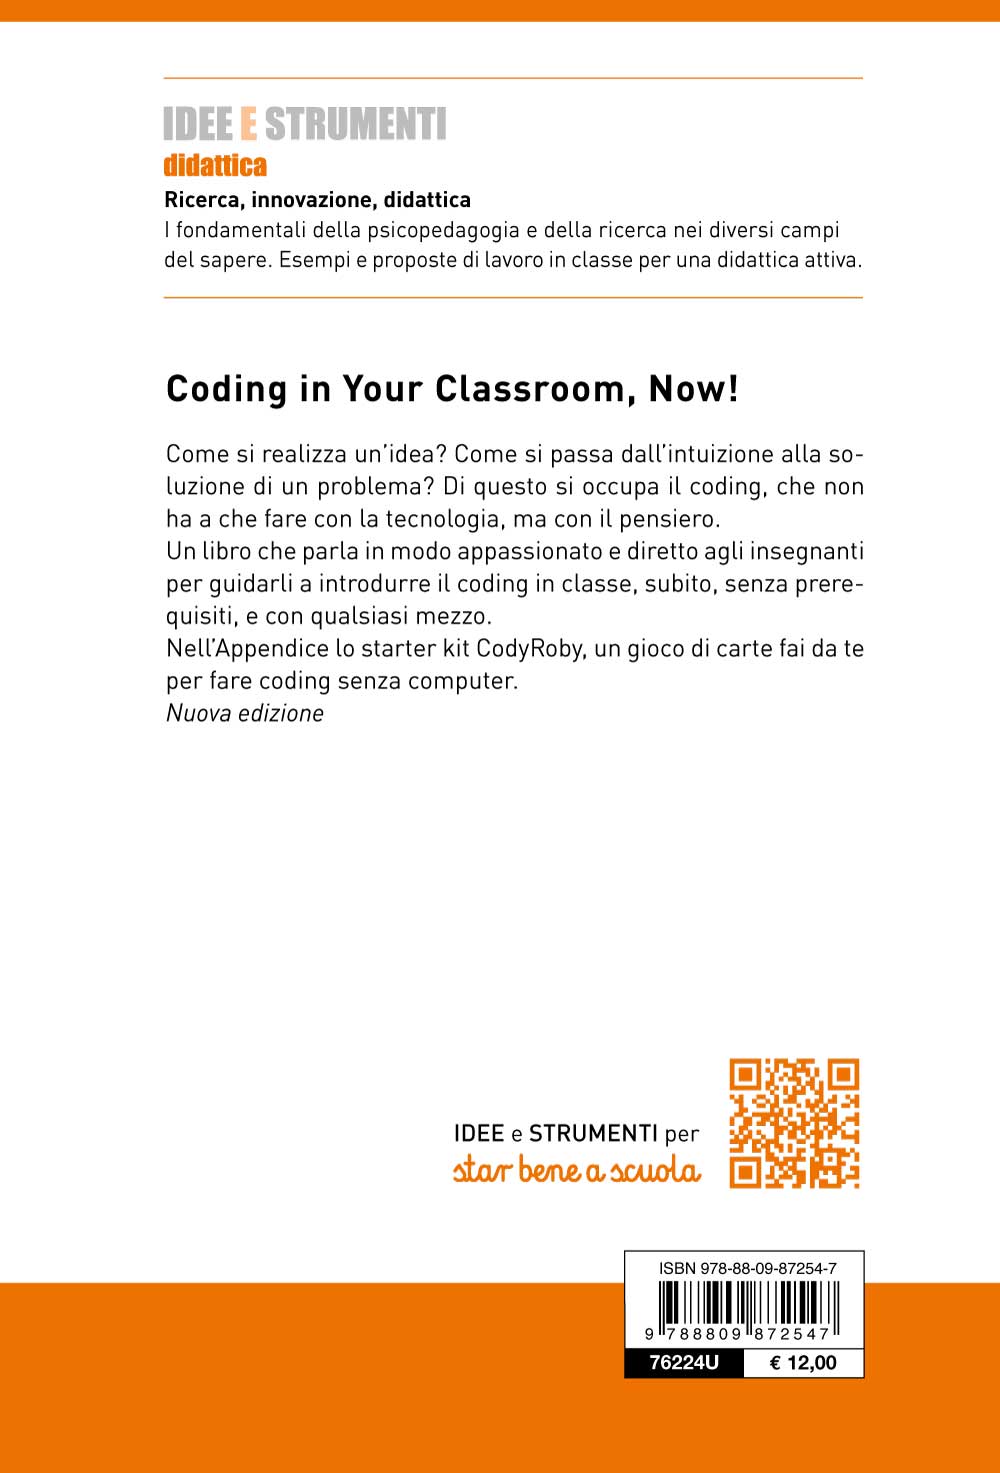 Coding in Your Classroom, Now!. Il pensiero computazionale è per tutti, come la scuola